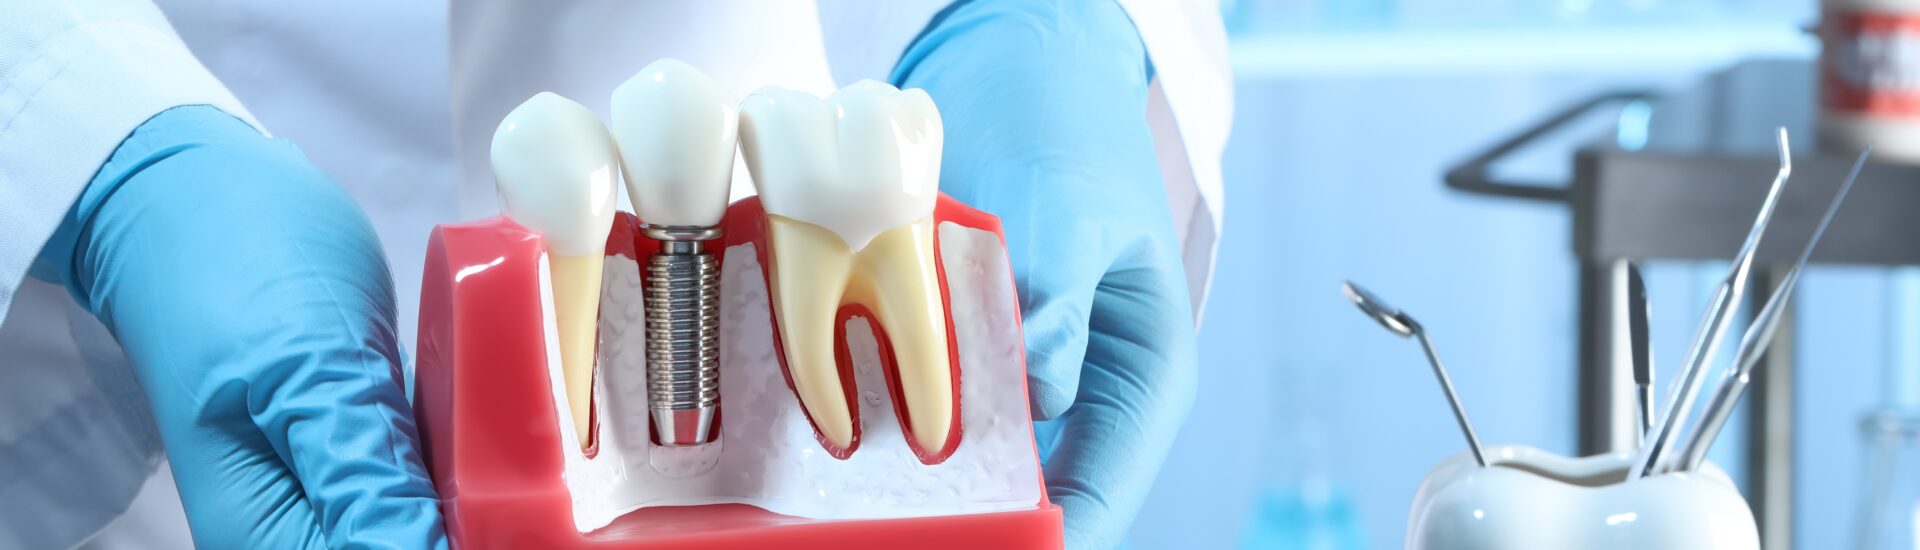 implantes dentários: conhecimentos